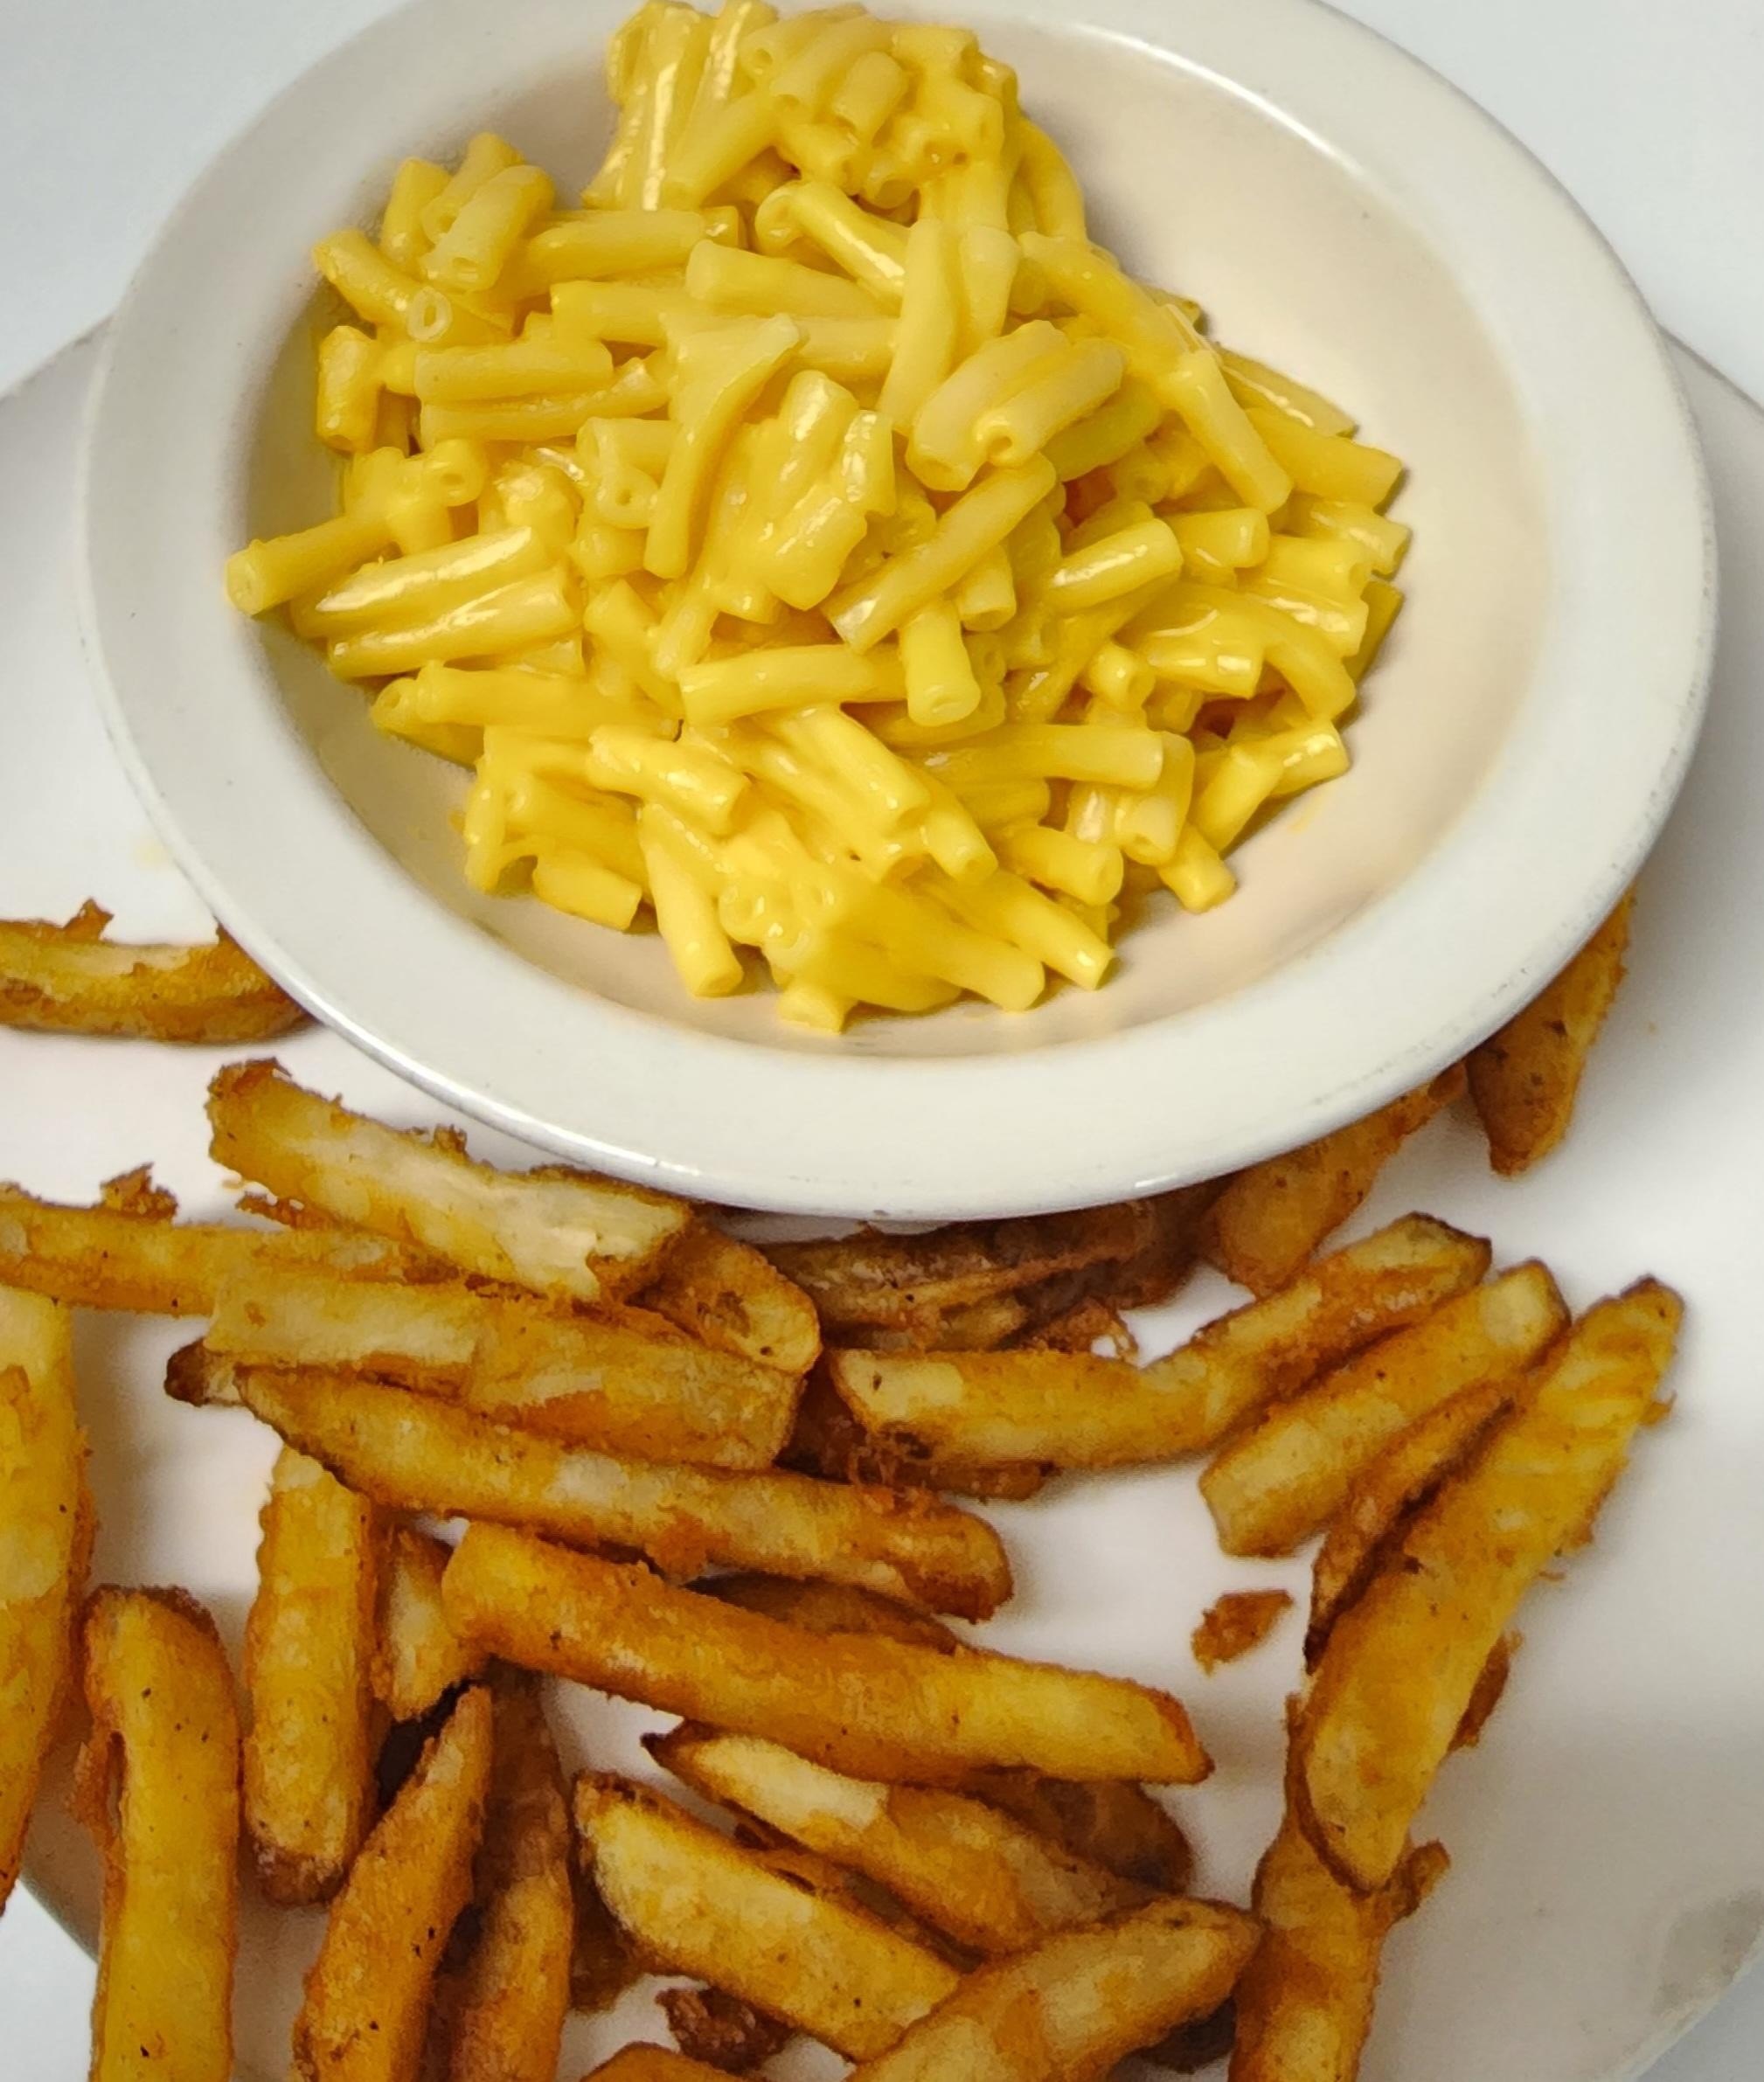 # 1 Mac n Cheese and Fries